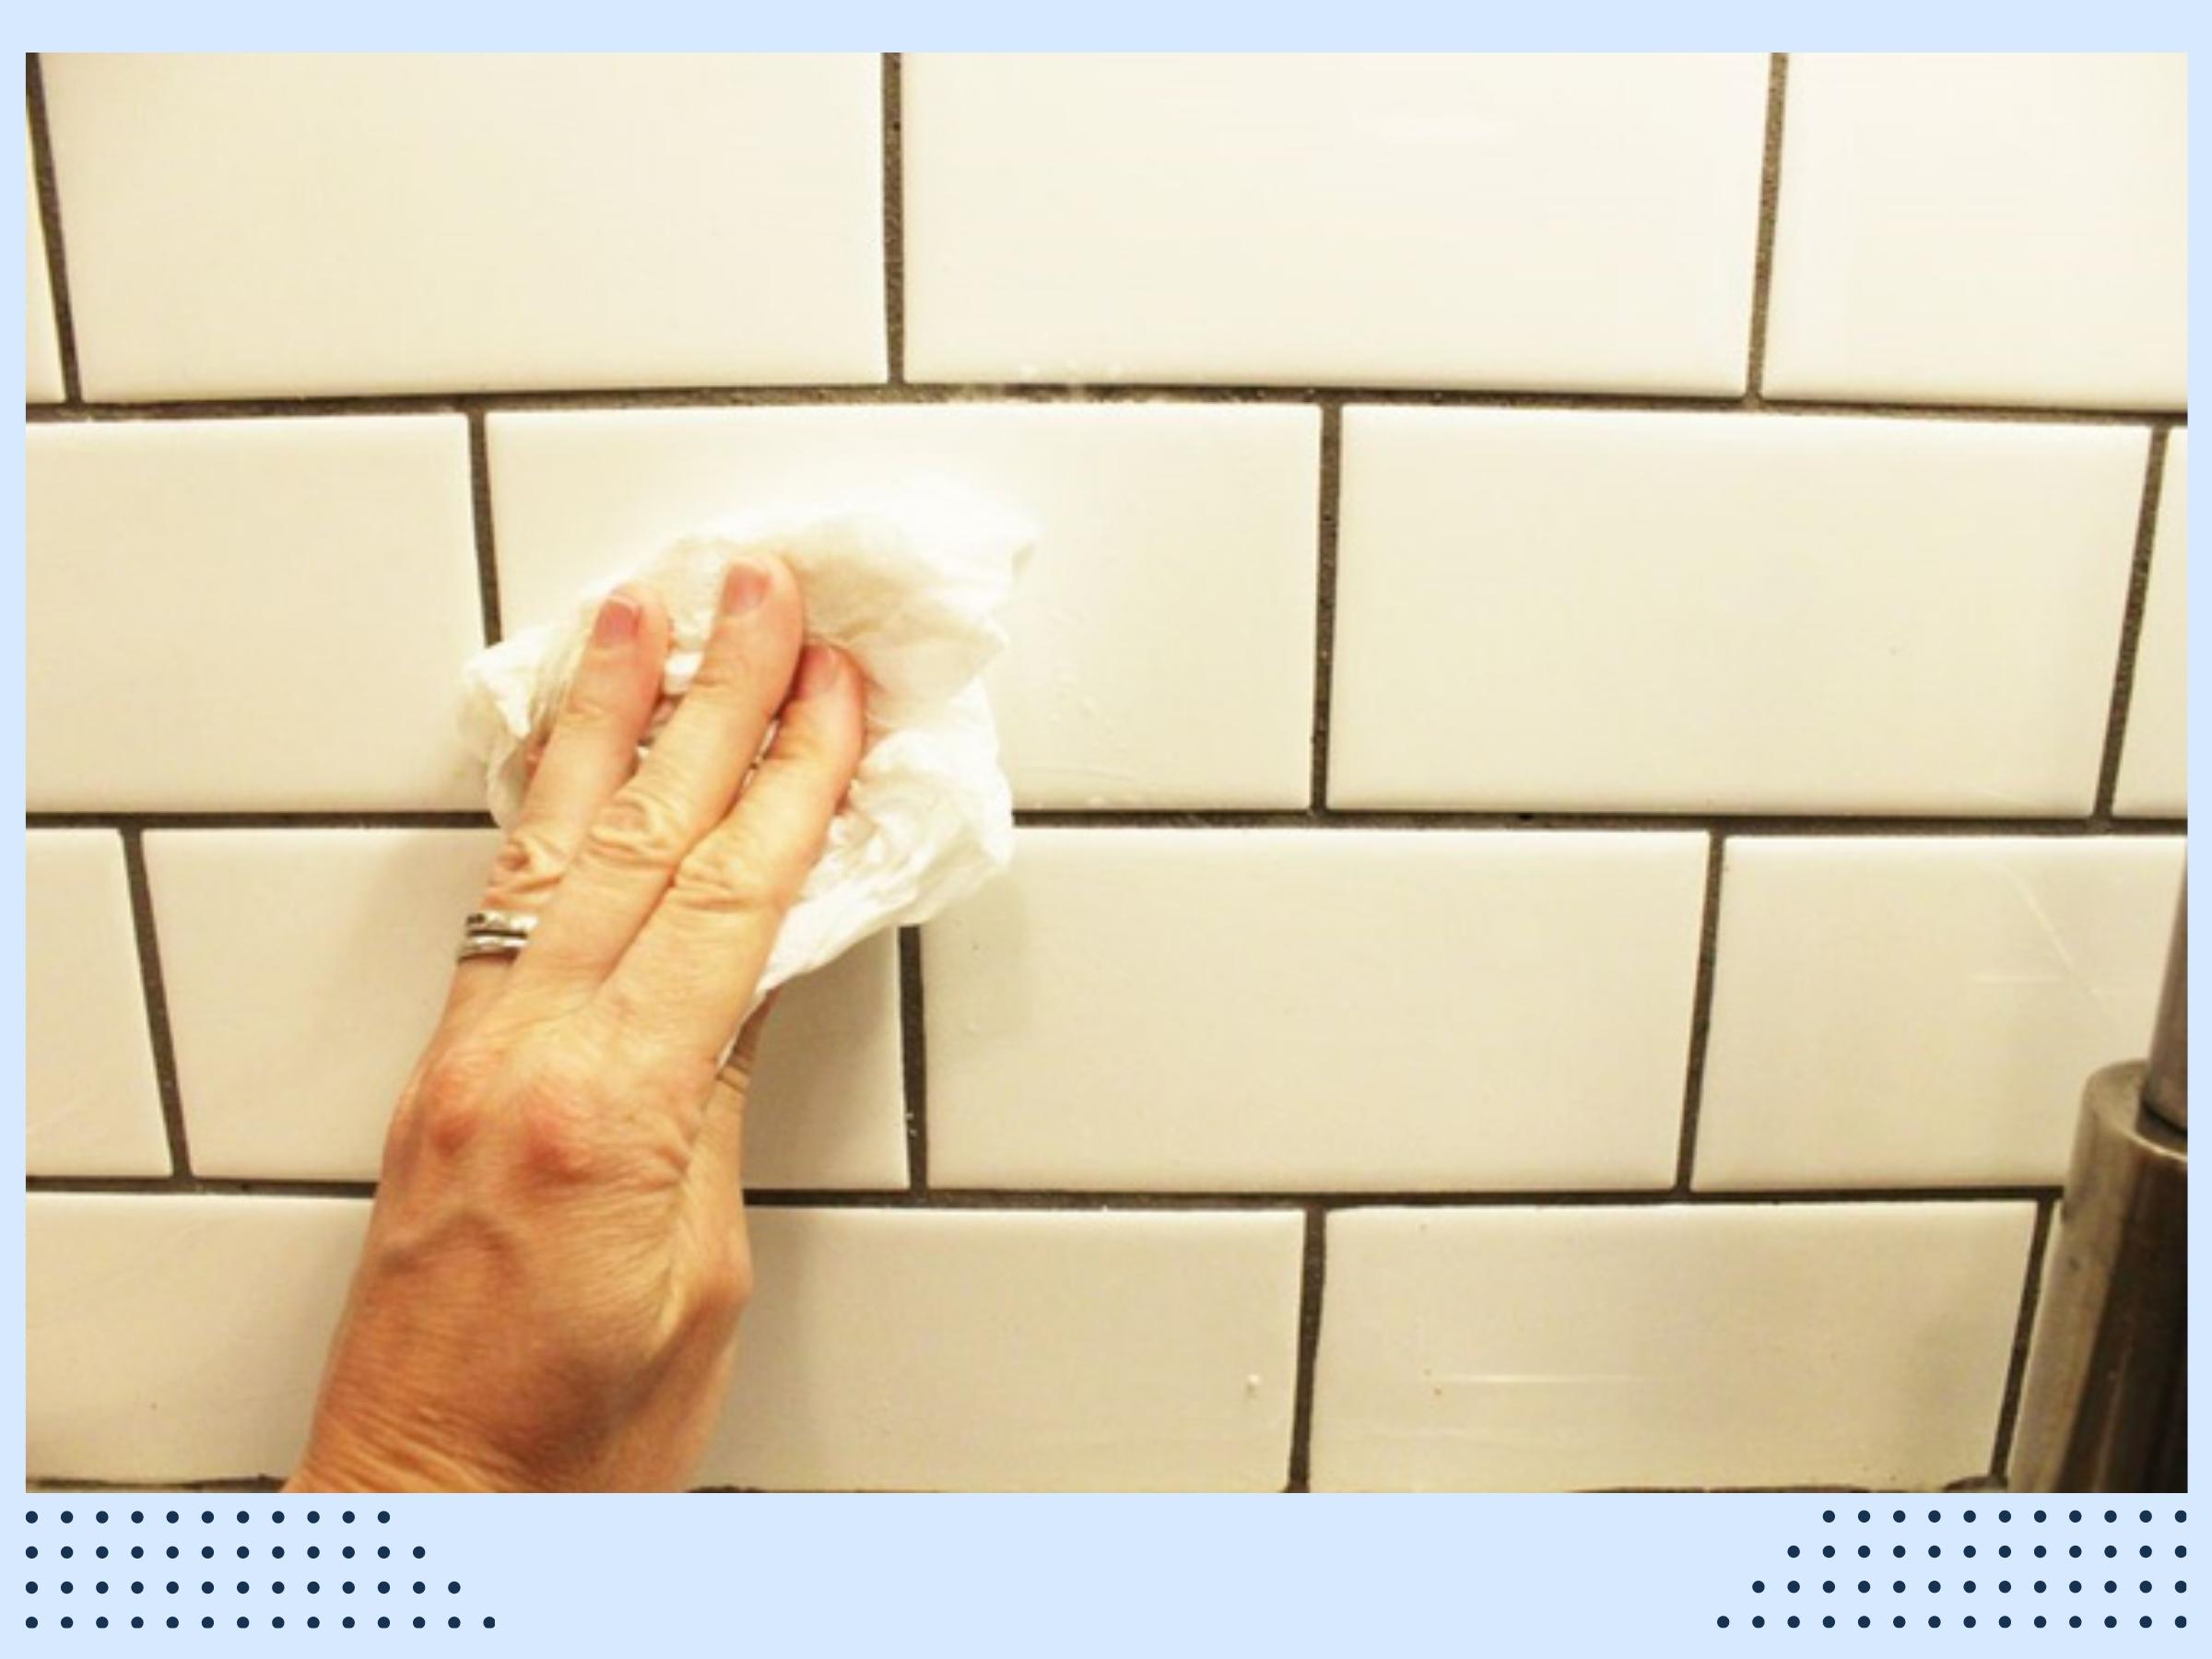 Ốp tường bếp giúp dễ vệ sinh tạo không gian sạch sẽ 